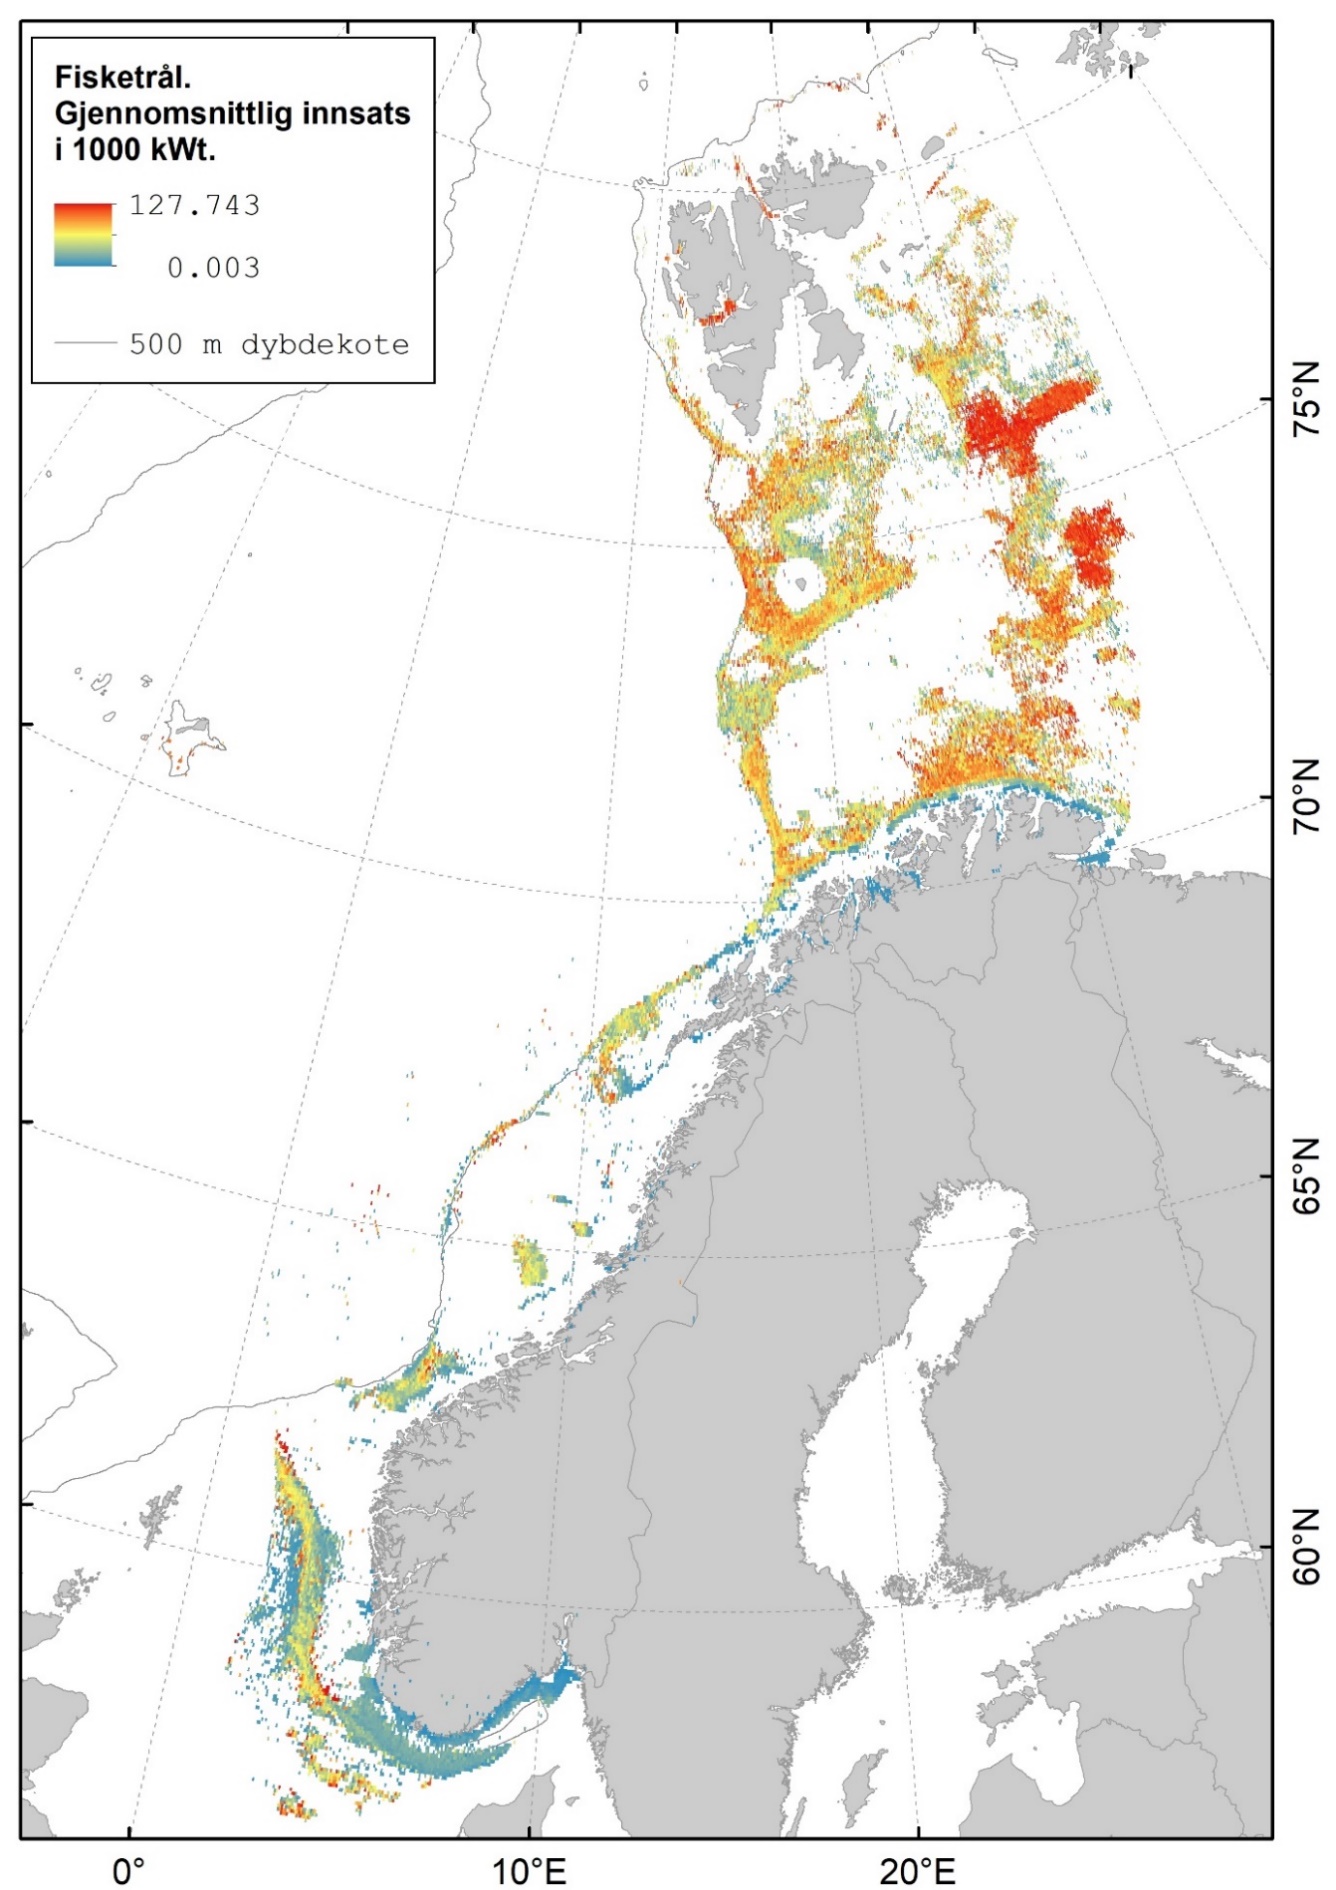 Kart som viser at fiske med fisketrål i hovedsak foregår på Storbanken, Sentralbanken, ved Bjørnøya, sør for Spitsbergen, sørlige Barentshav, Tromsøflaket, Mørebankene og langs Norskerenna.